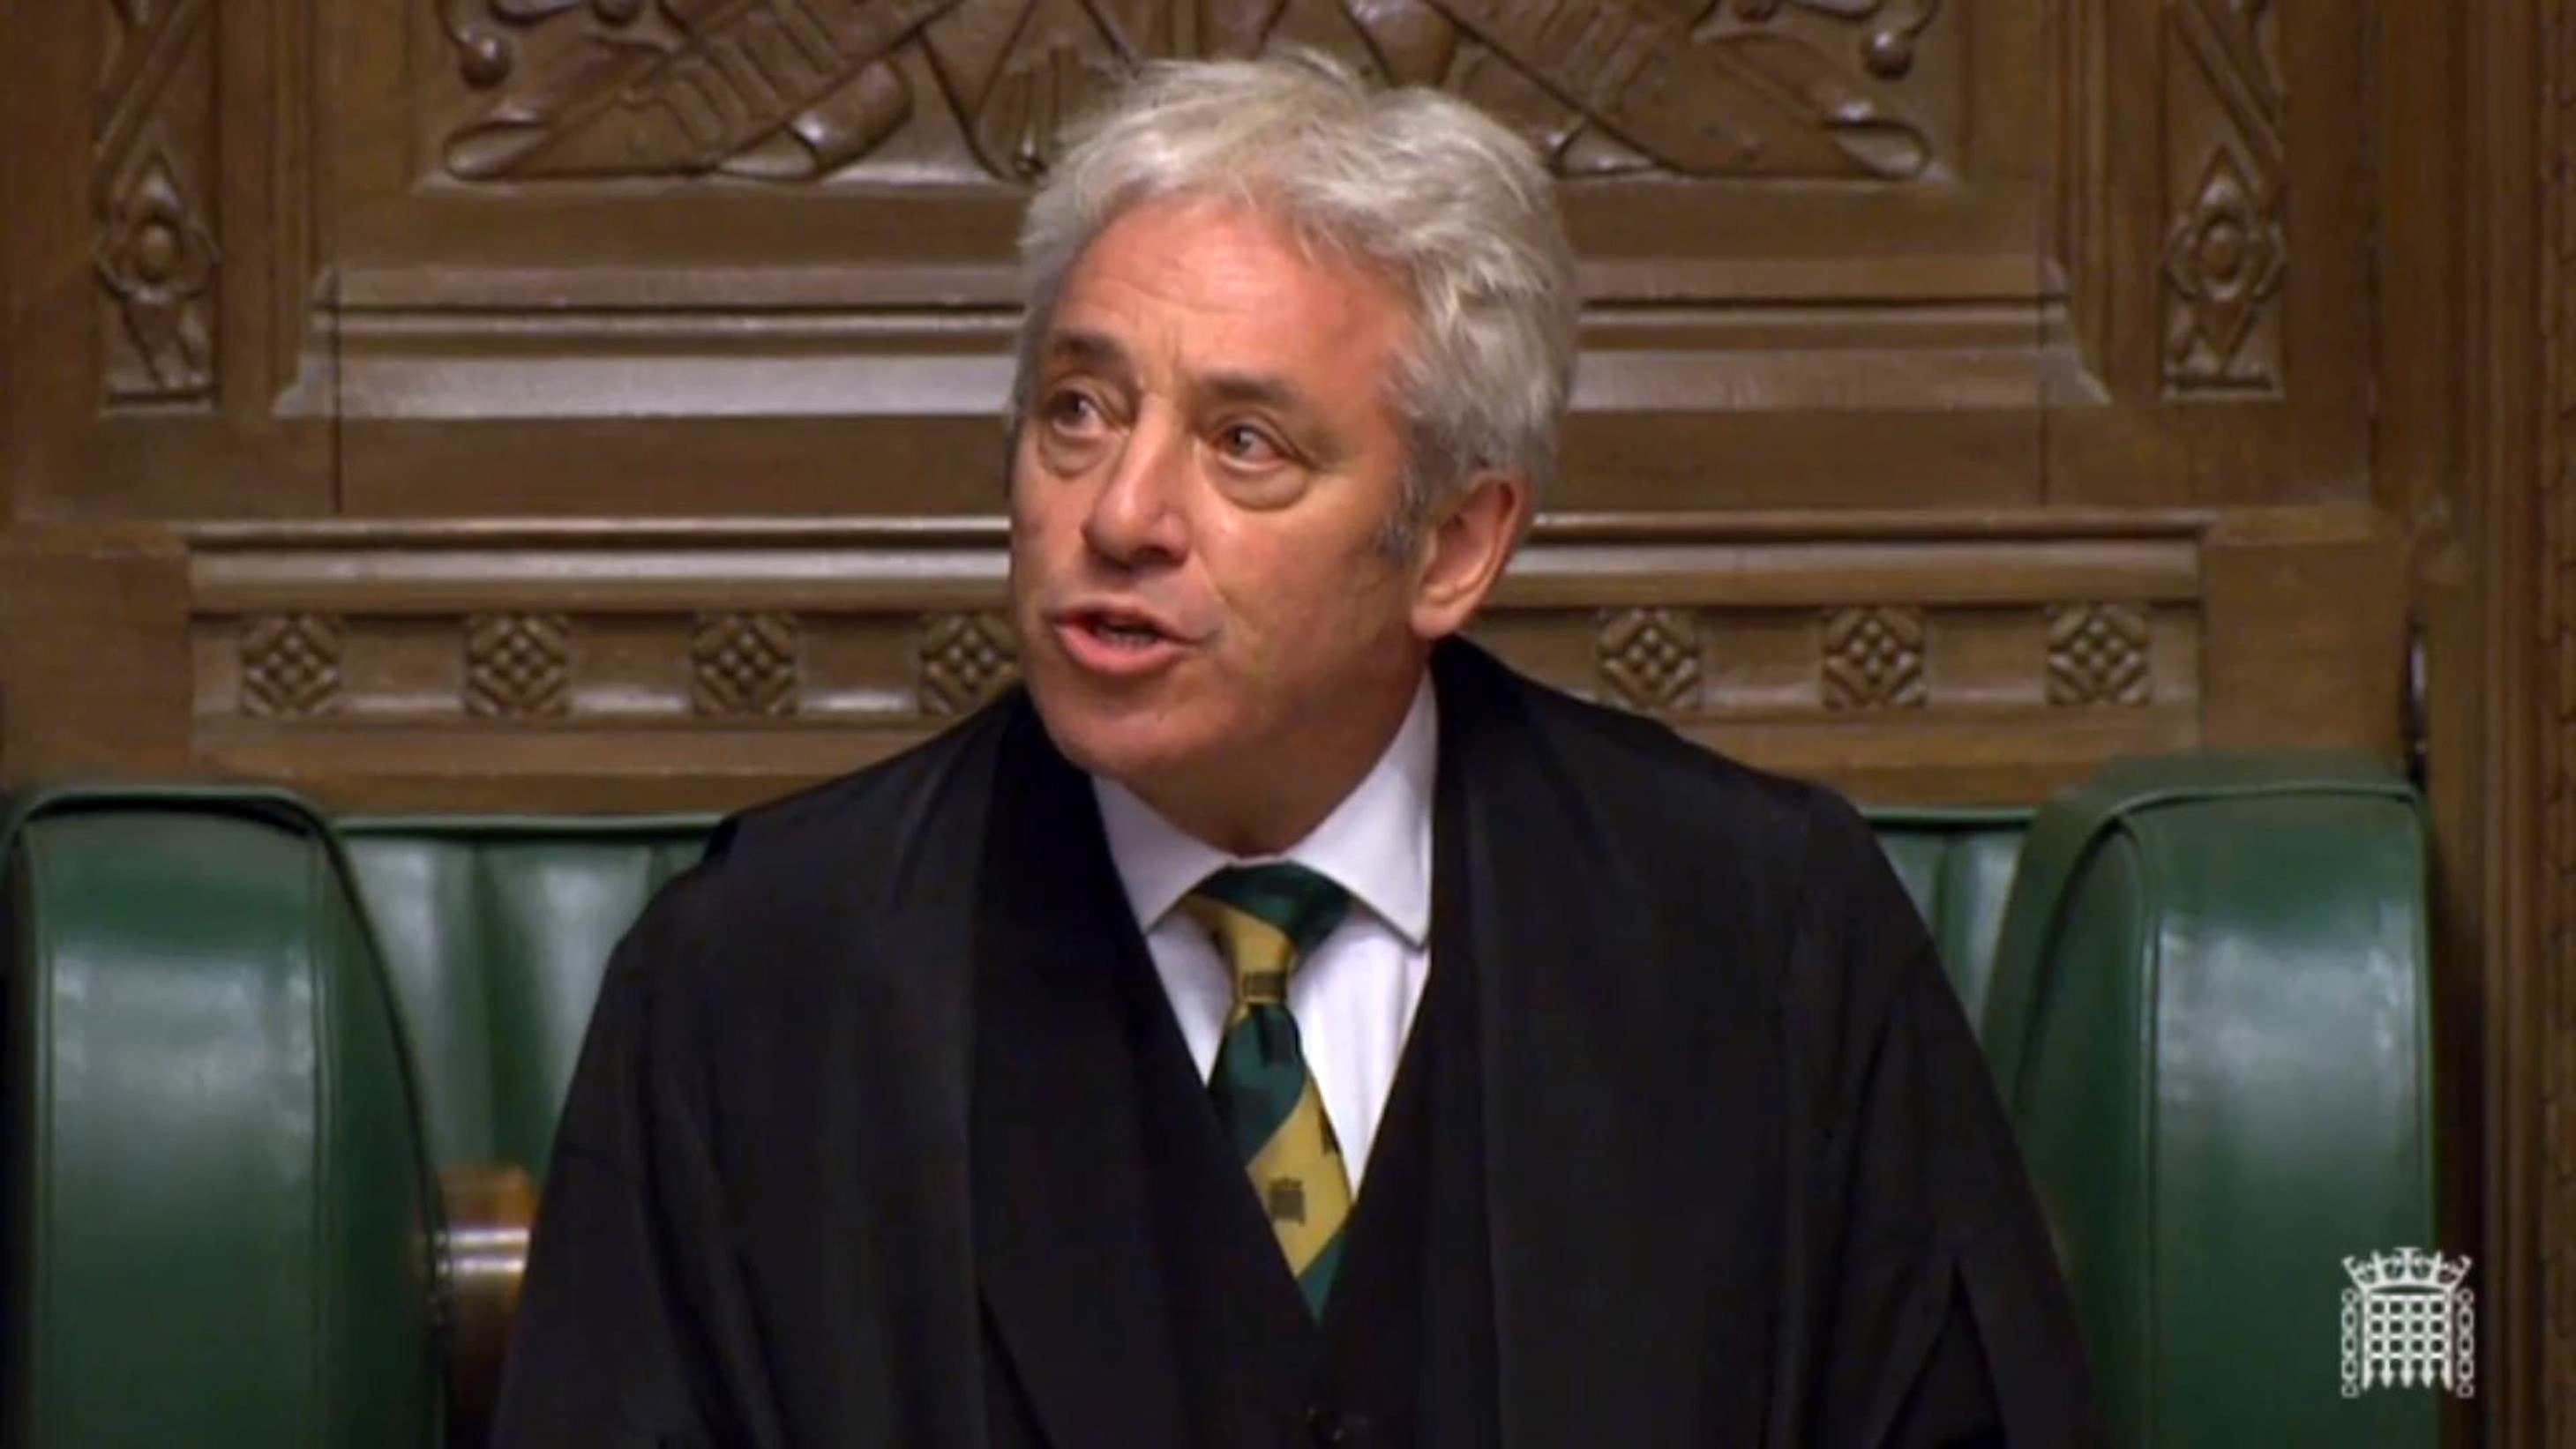 El speaker del Parlamento británico acepta que Puigdemont hable en la cámara